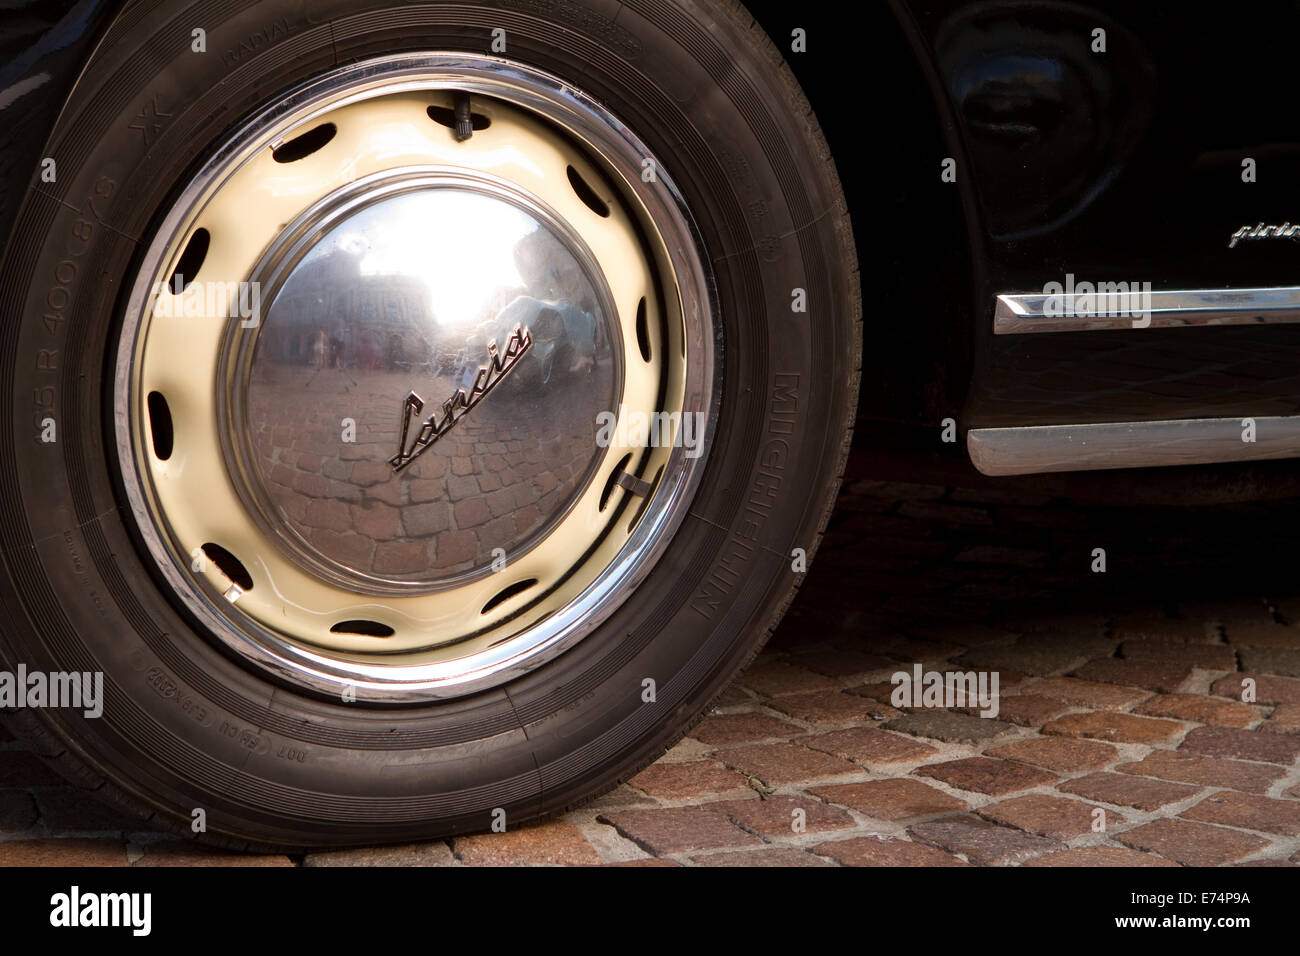 Turin, Italien. 6. September 2014. Das Rad von einem Lancia Aurelia B52. Sammler von historischen Autos trafen sich in Torino für einen Auto-Eleganz-Wettbewerb. Stockfoto